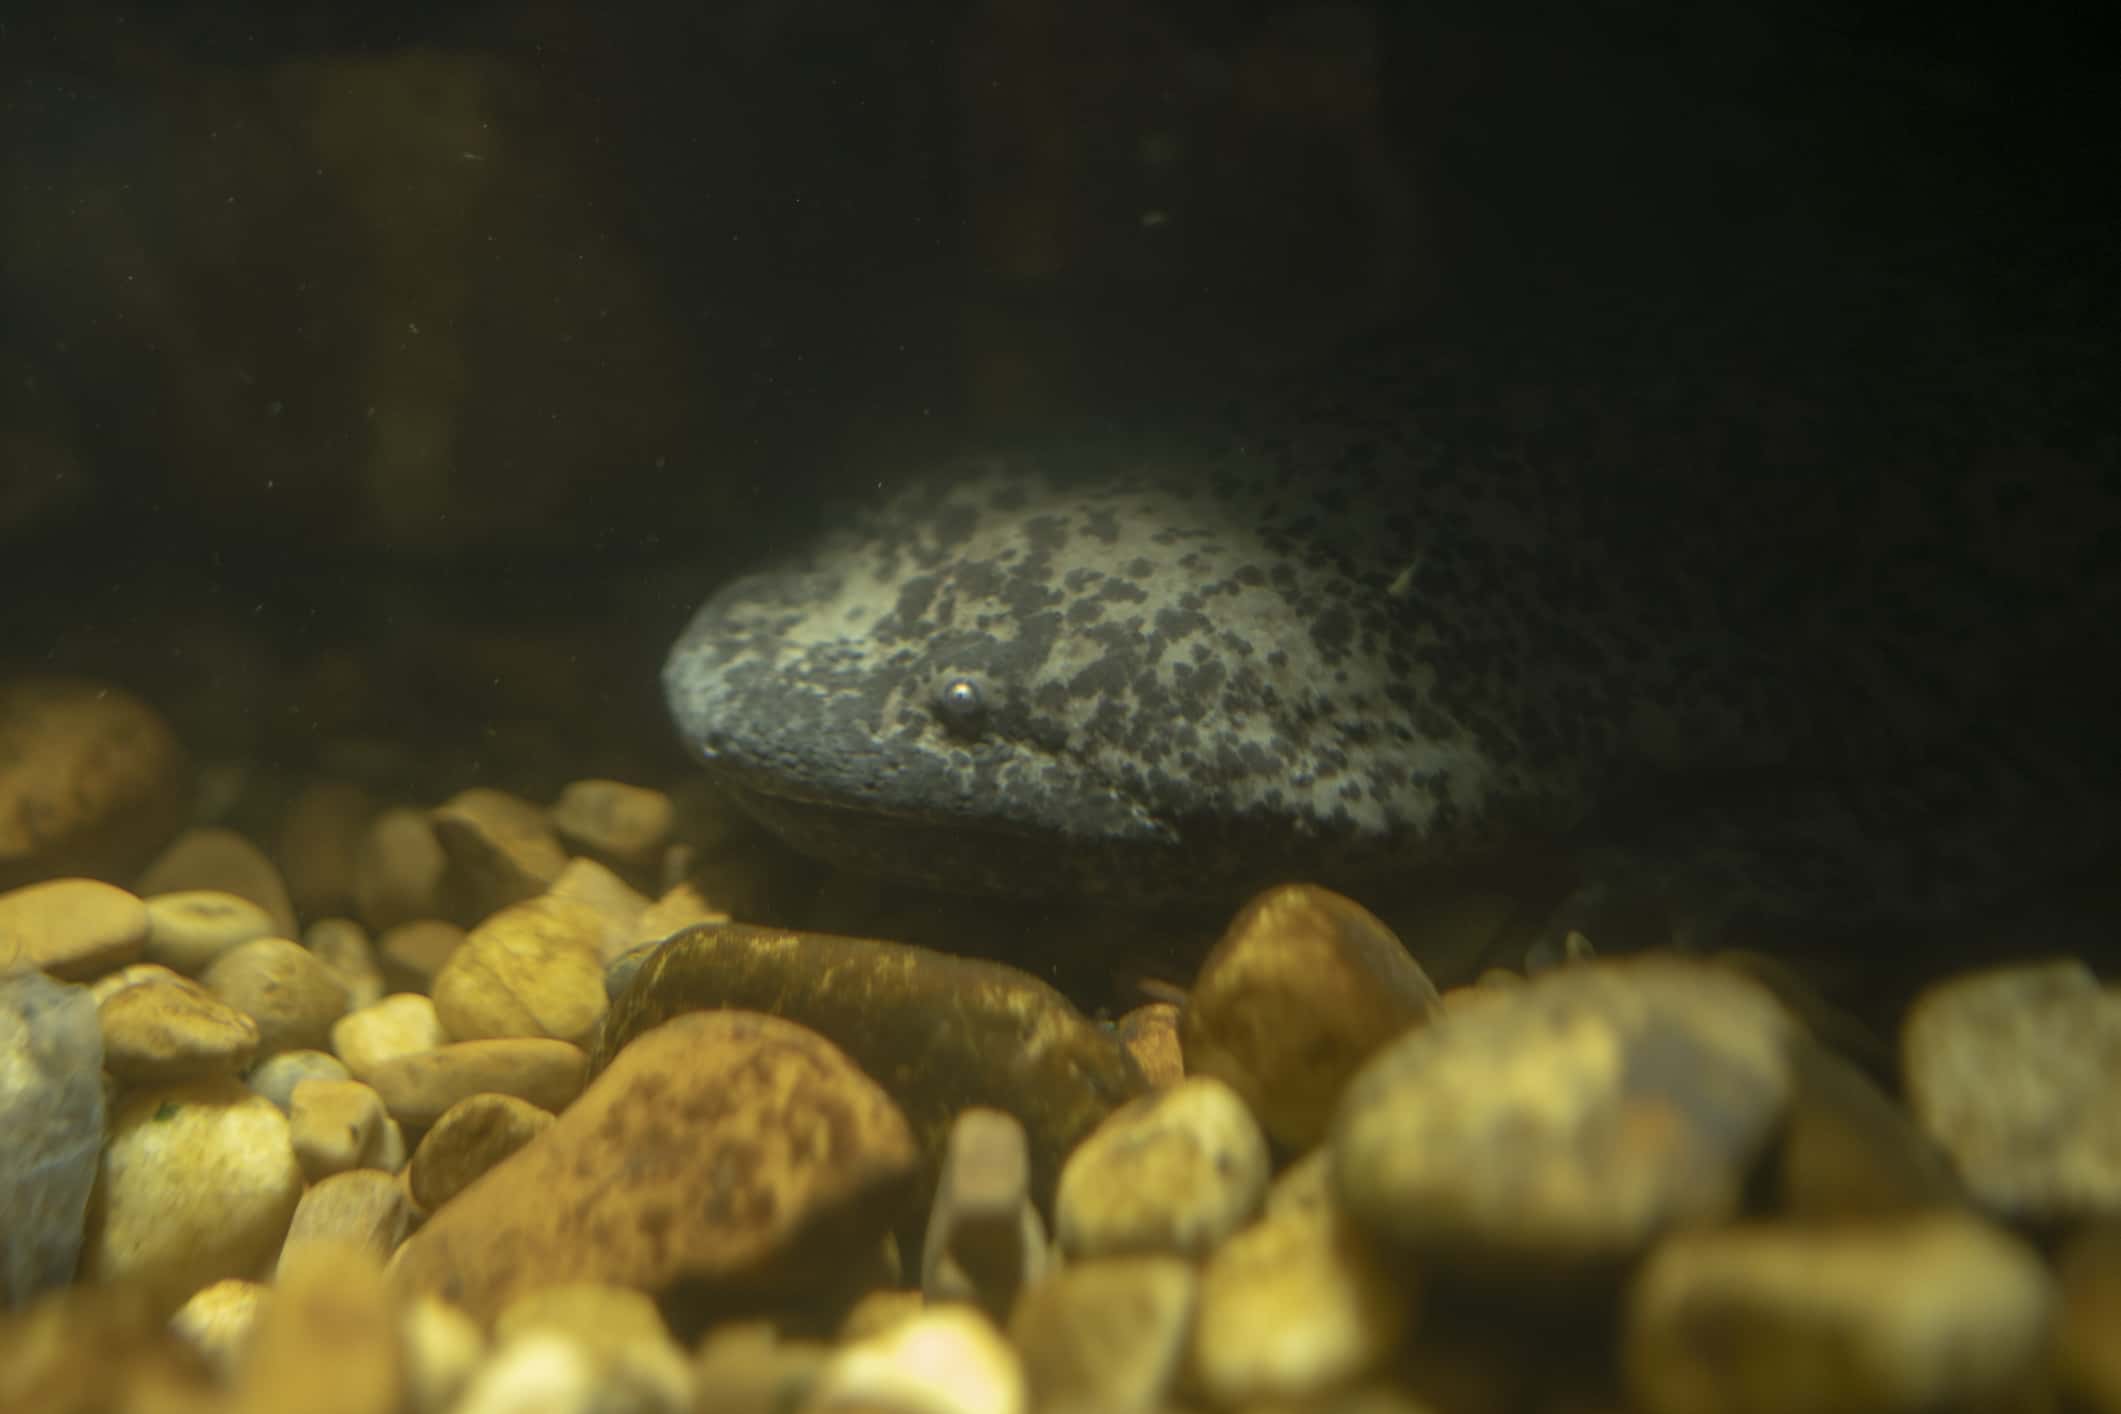 giant chinese salamander in an aquarium